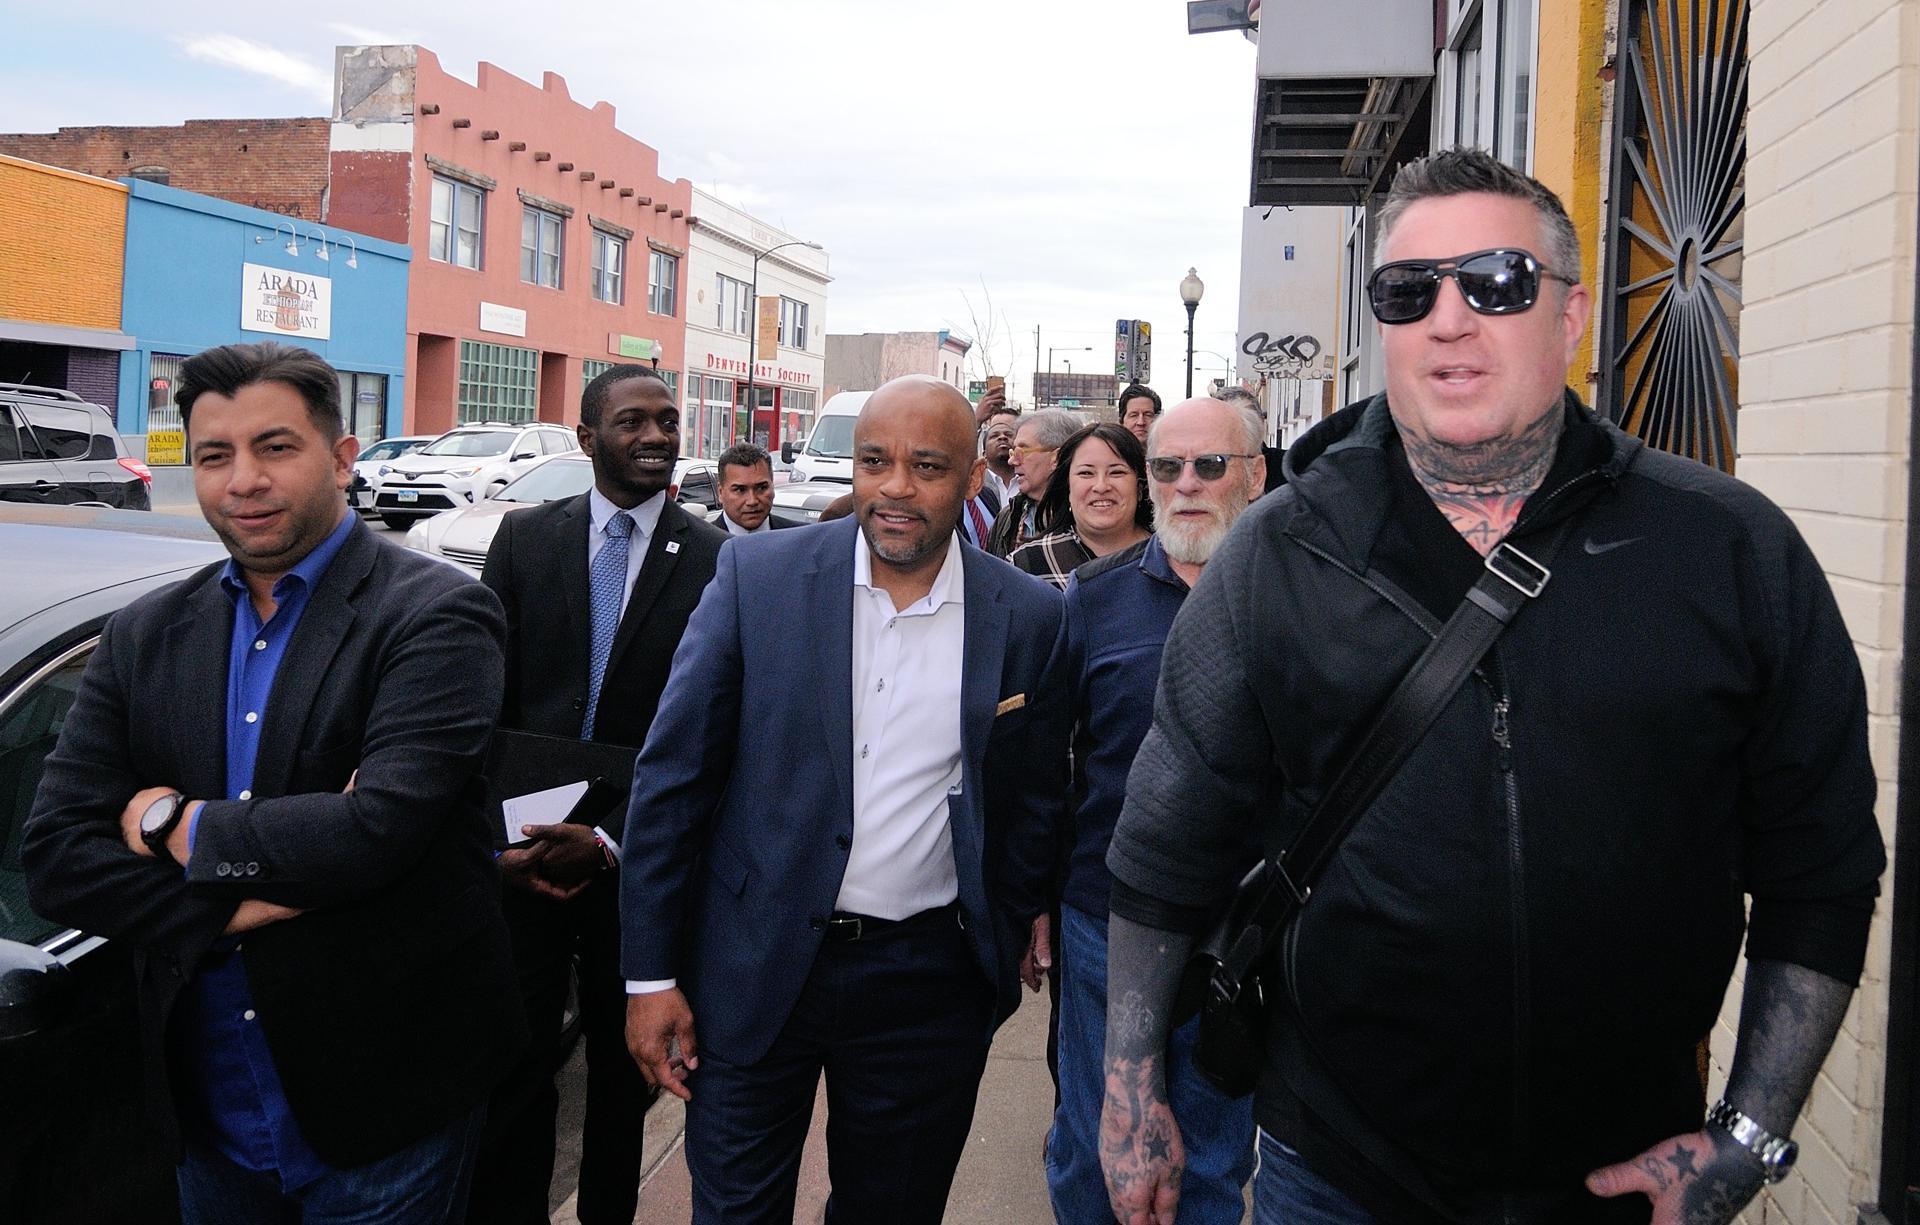 El alcalde de Denver Michael Hancock (c) camina junto al concejal de la ciudad Paul López (izq.) y el dueño de Tribe Tattoo, John Slaughter, durante su visita en Denver, Colorado. Imagen de archivo. EFE/Miguel Castro
